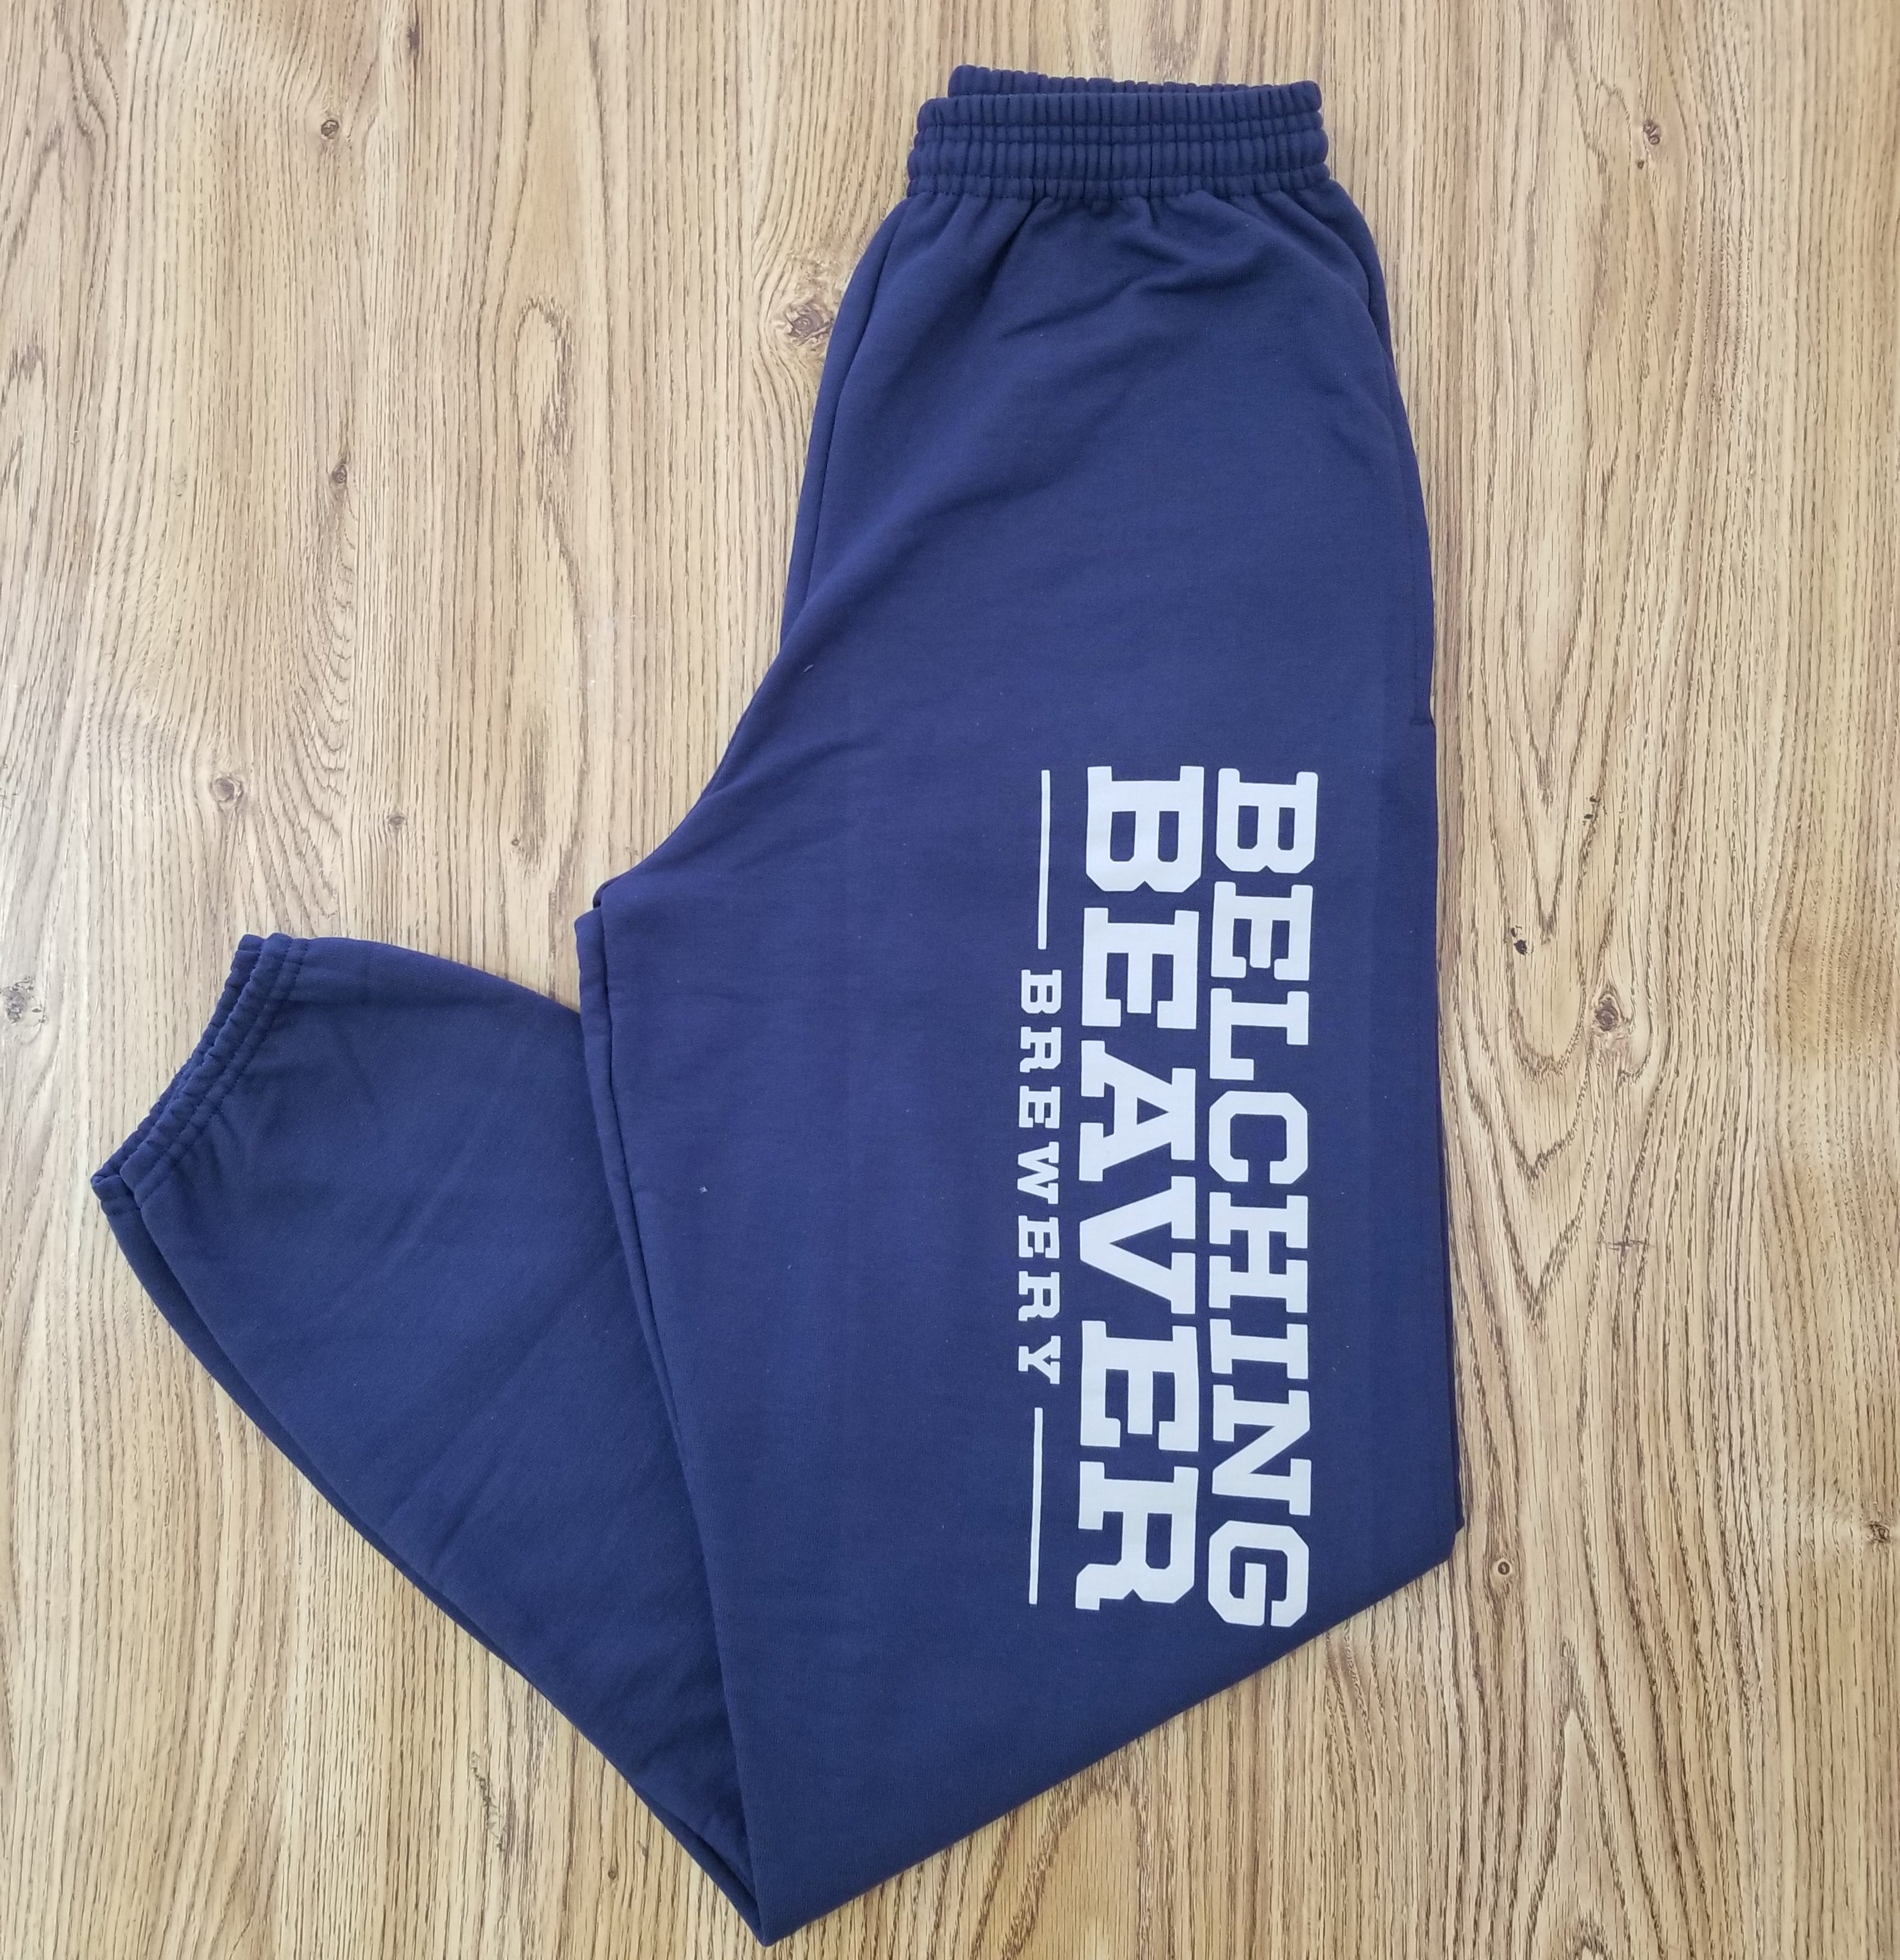 Sweatpants – Belching Brewery Navy Beaver